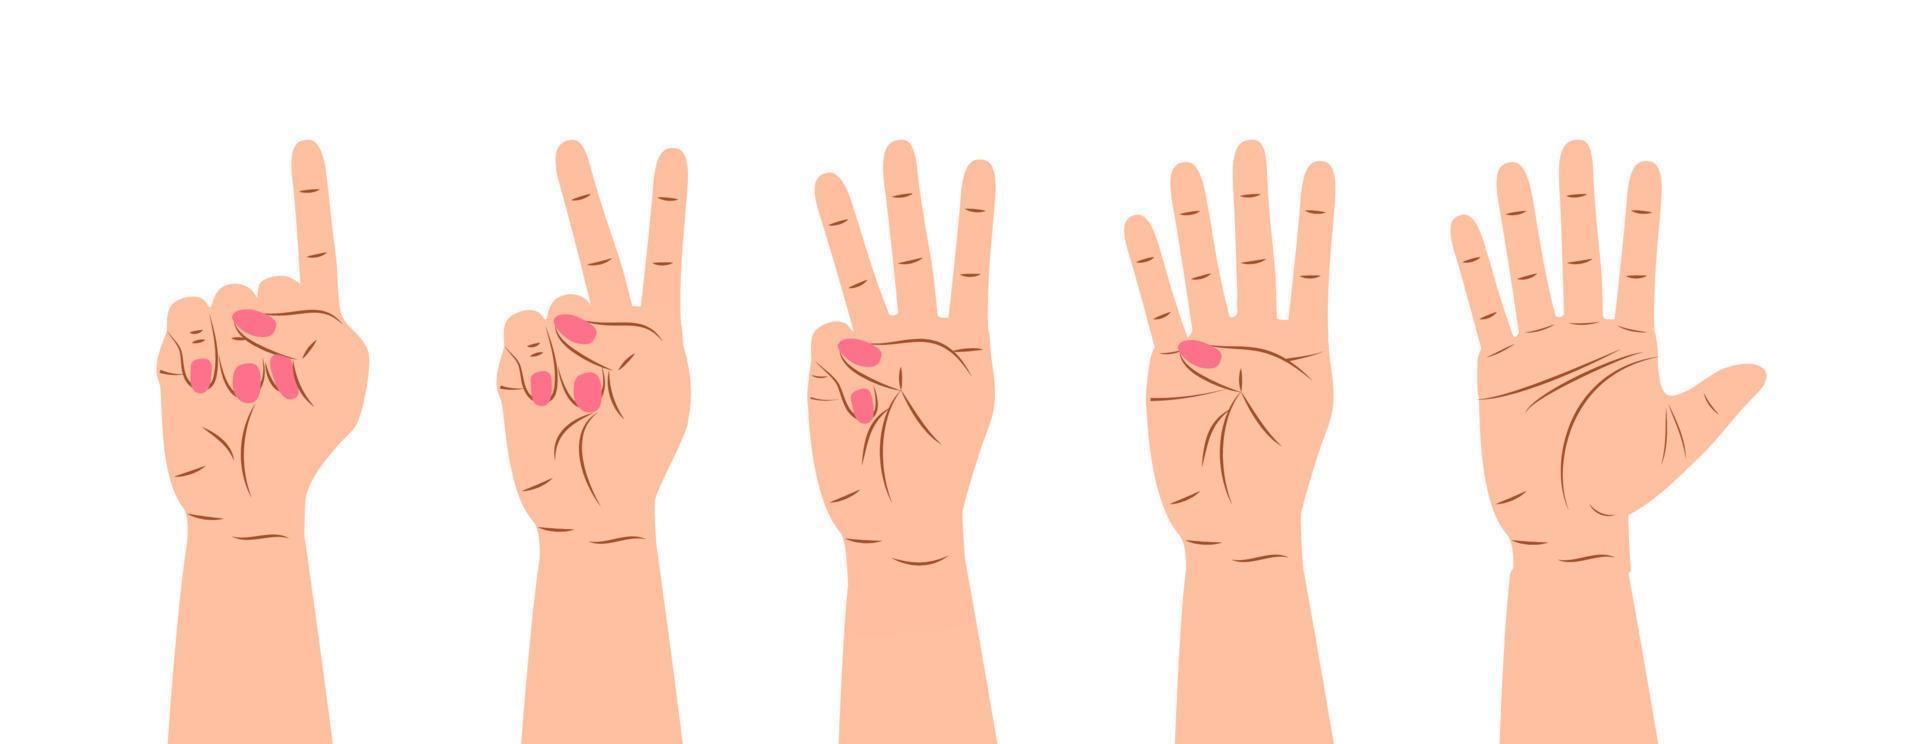 vettore del segno del gesto della mano. set di contare sulle dita. cinque icone del polso con conteggio delle dita in stile cartone animato.